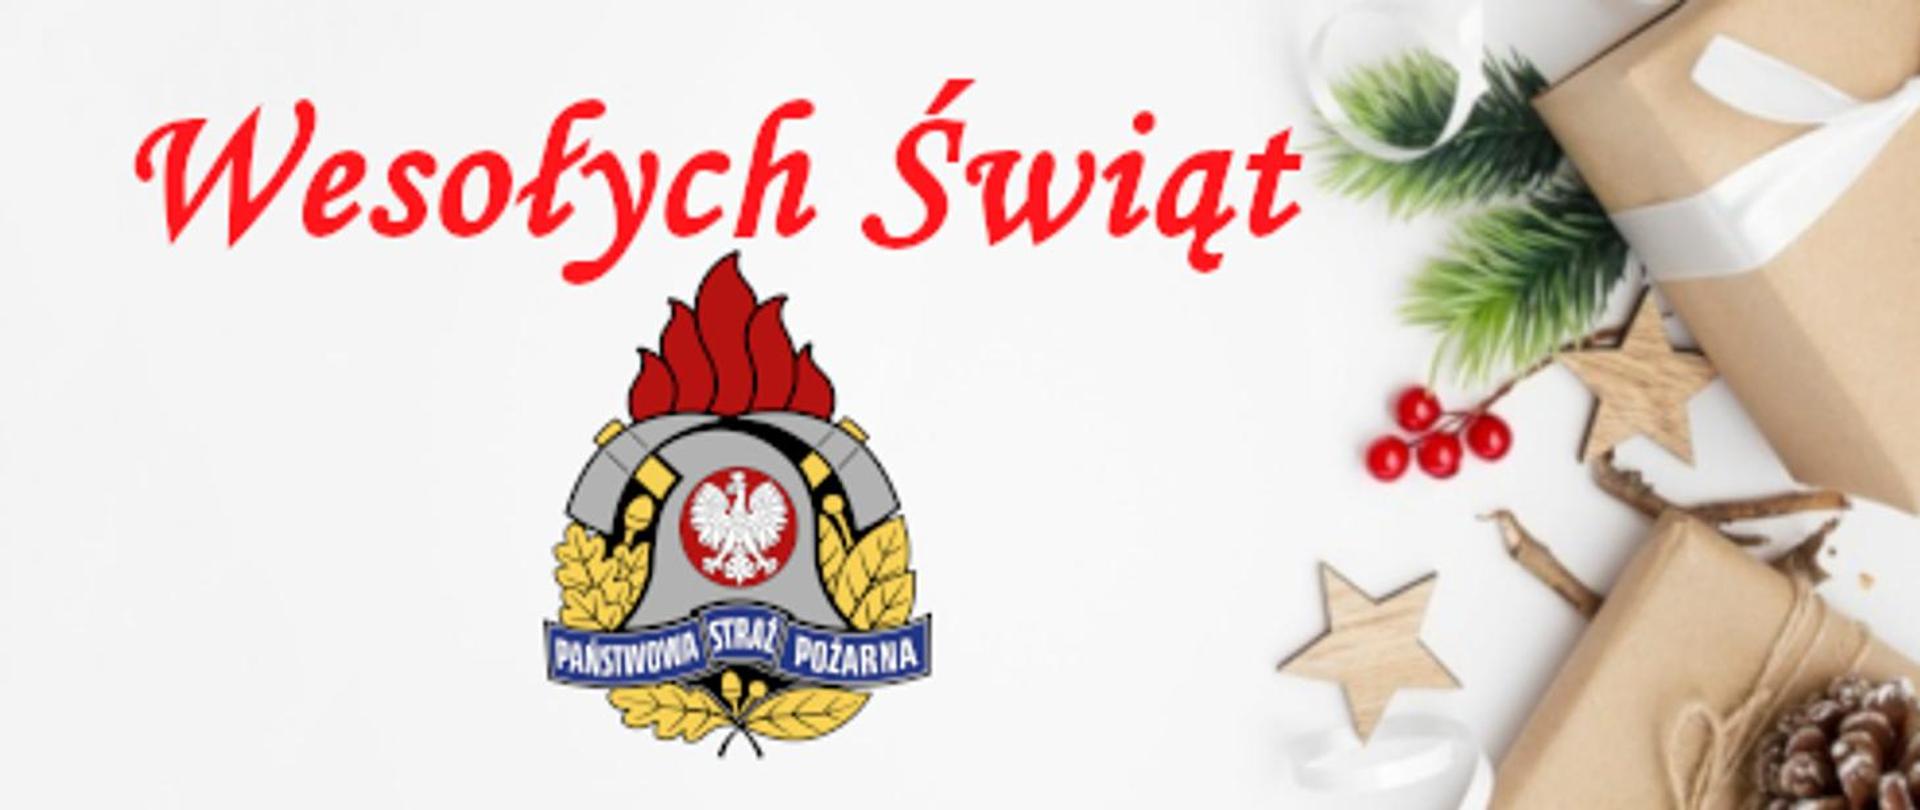 Zyczenia_Wojewodzki_2020_logo